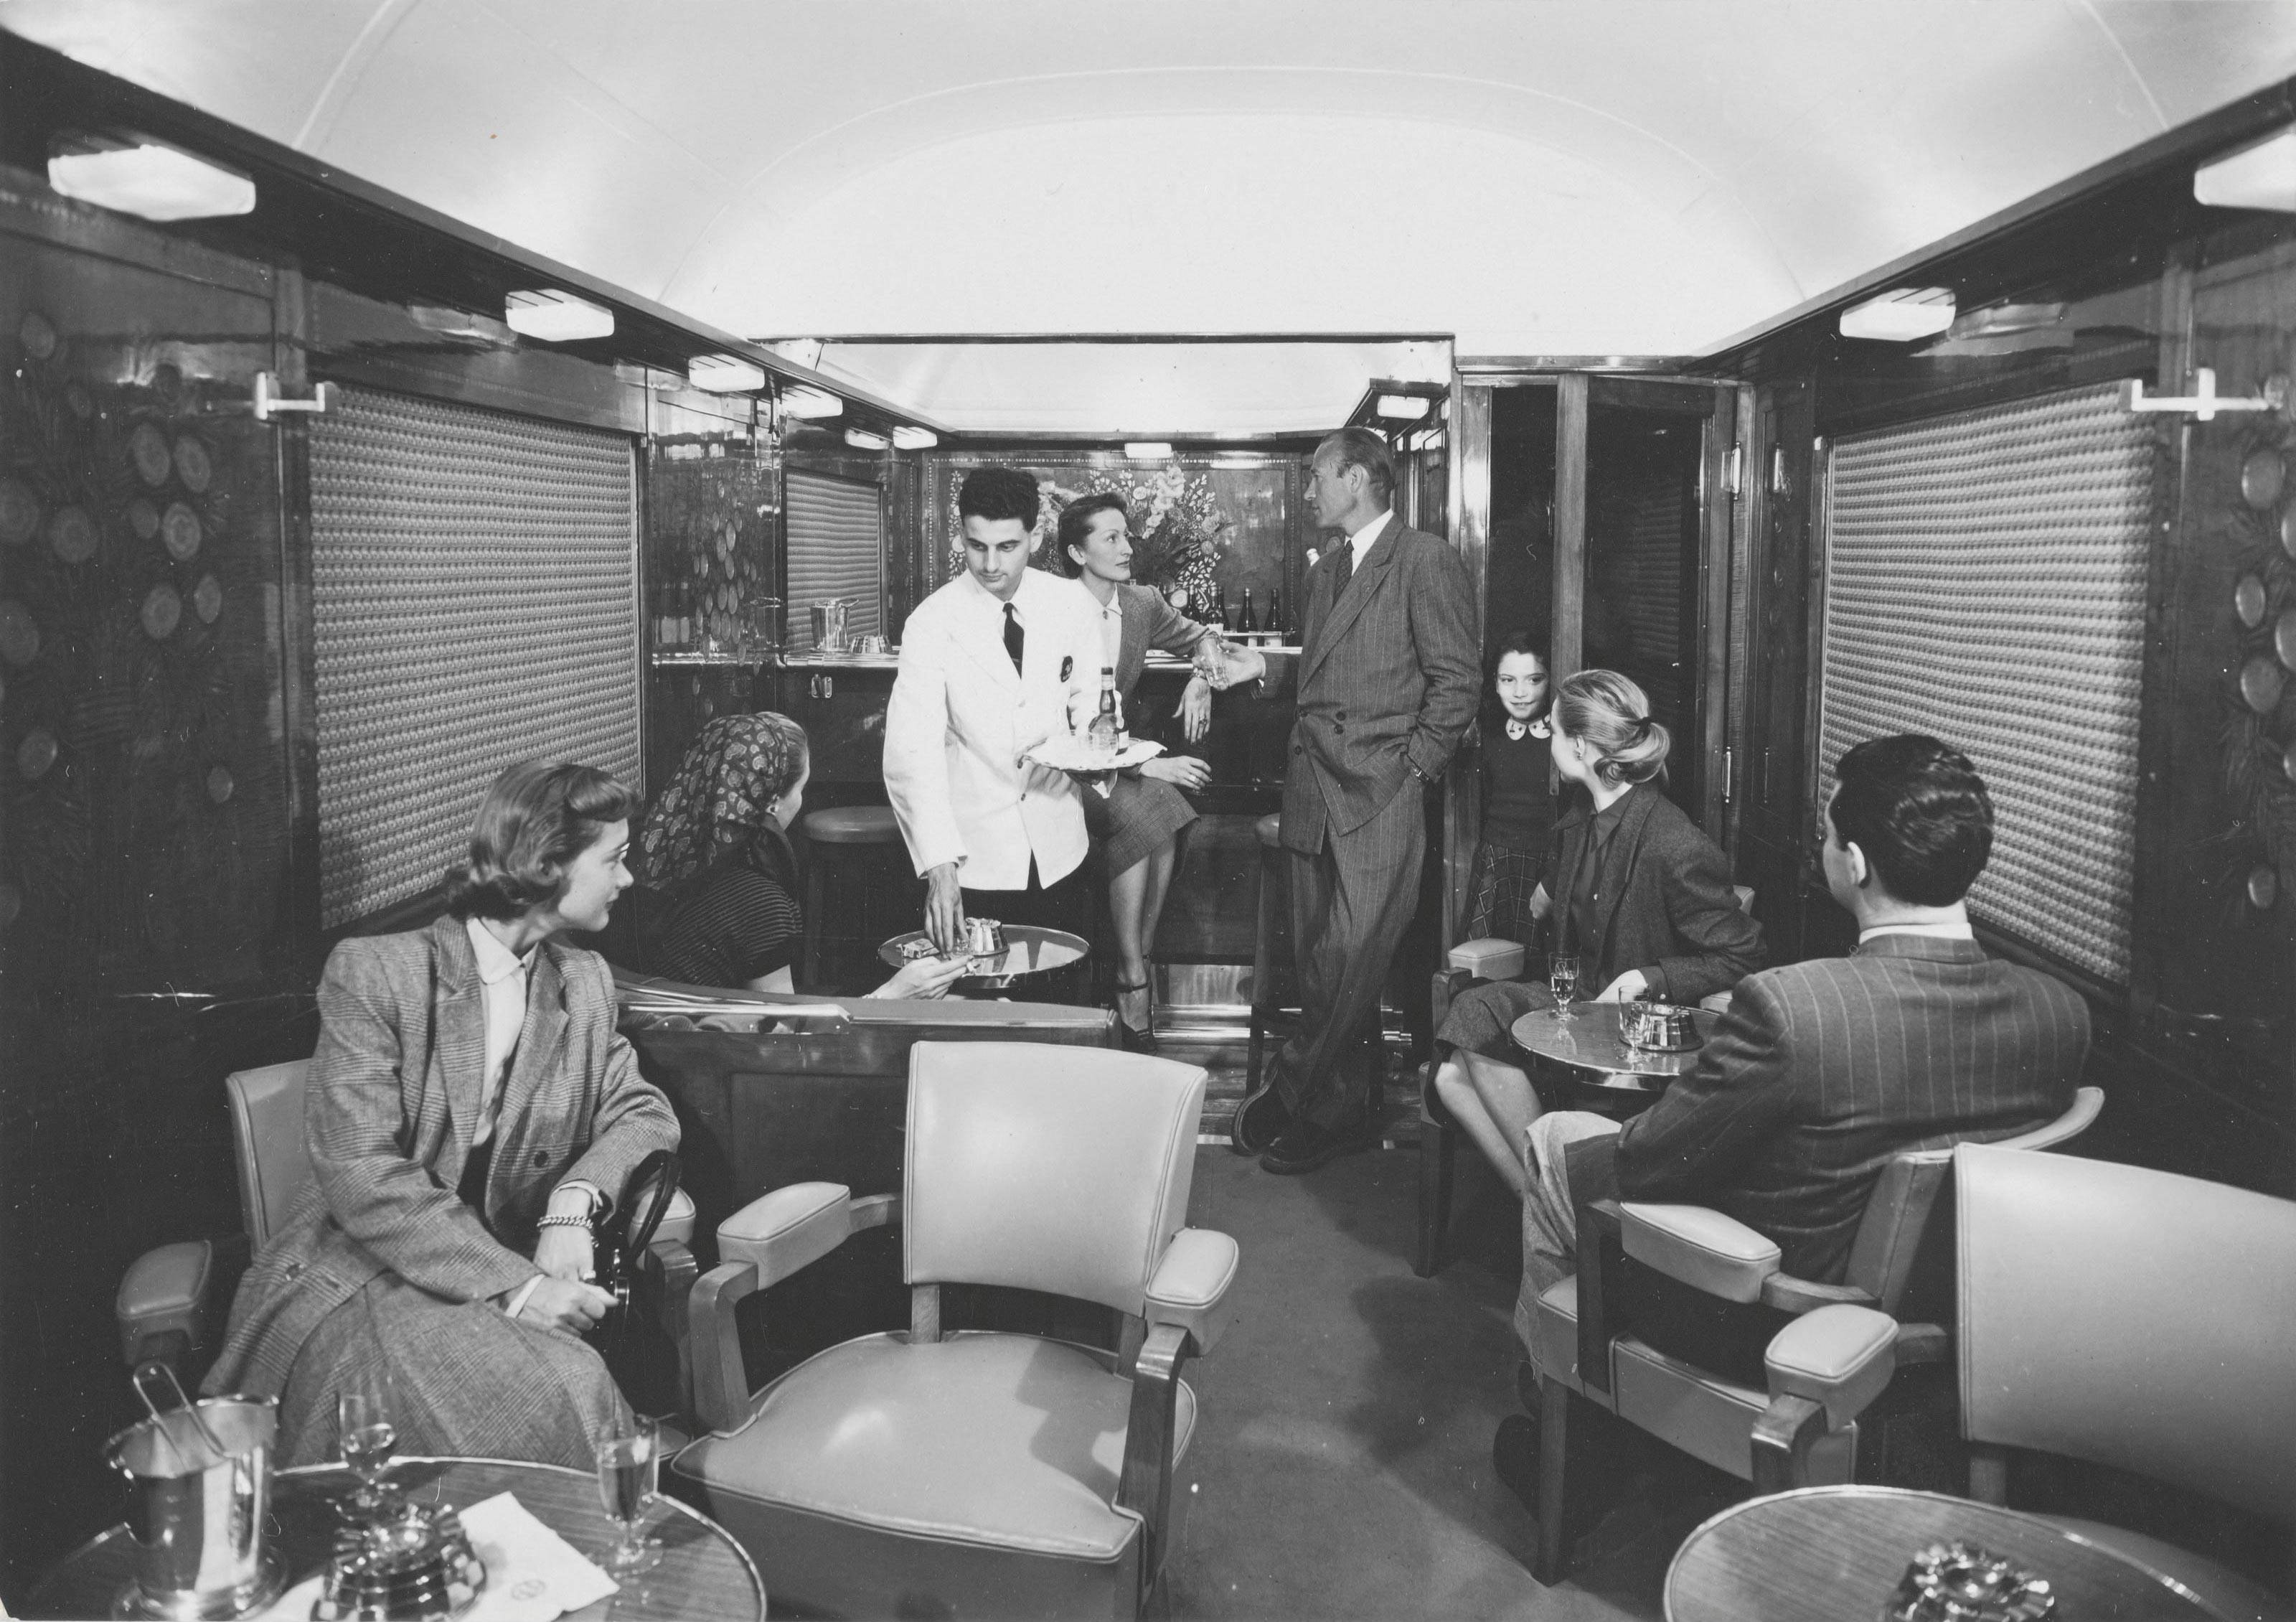 Photographie publicitaire pour la promotion du Train Bleu de la CIWL, reliant paris à la Côte d'Azur, montrant des passagers à bord d'une voiture-salon Pullman transformée en bar, vers 1970. - FDOE - Exposition Orient-Express & Cie